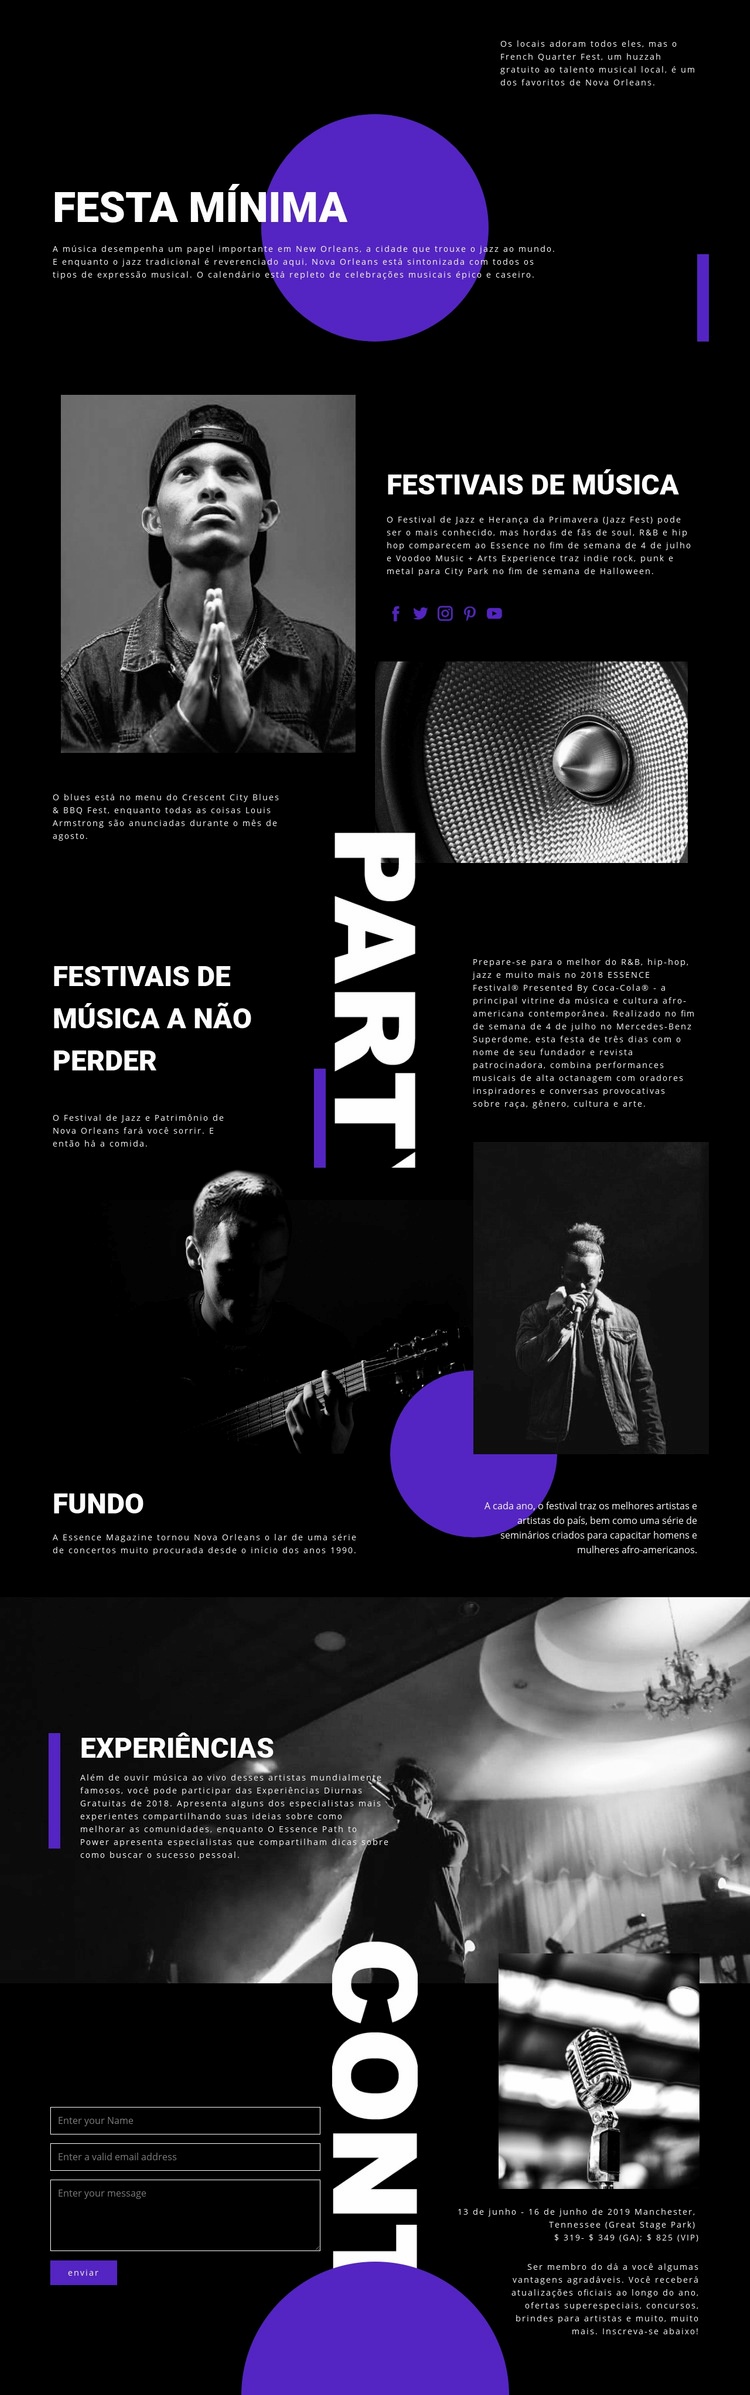 Festival de Música Maquete do site